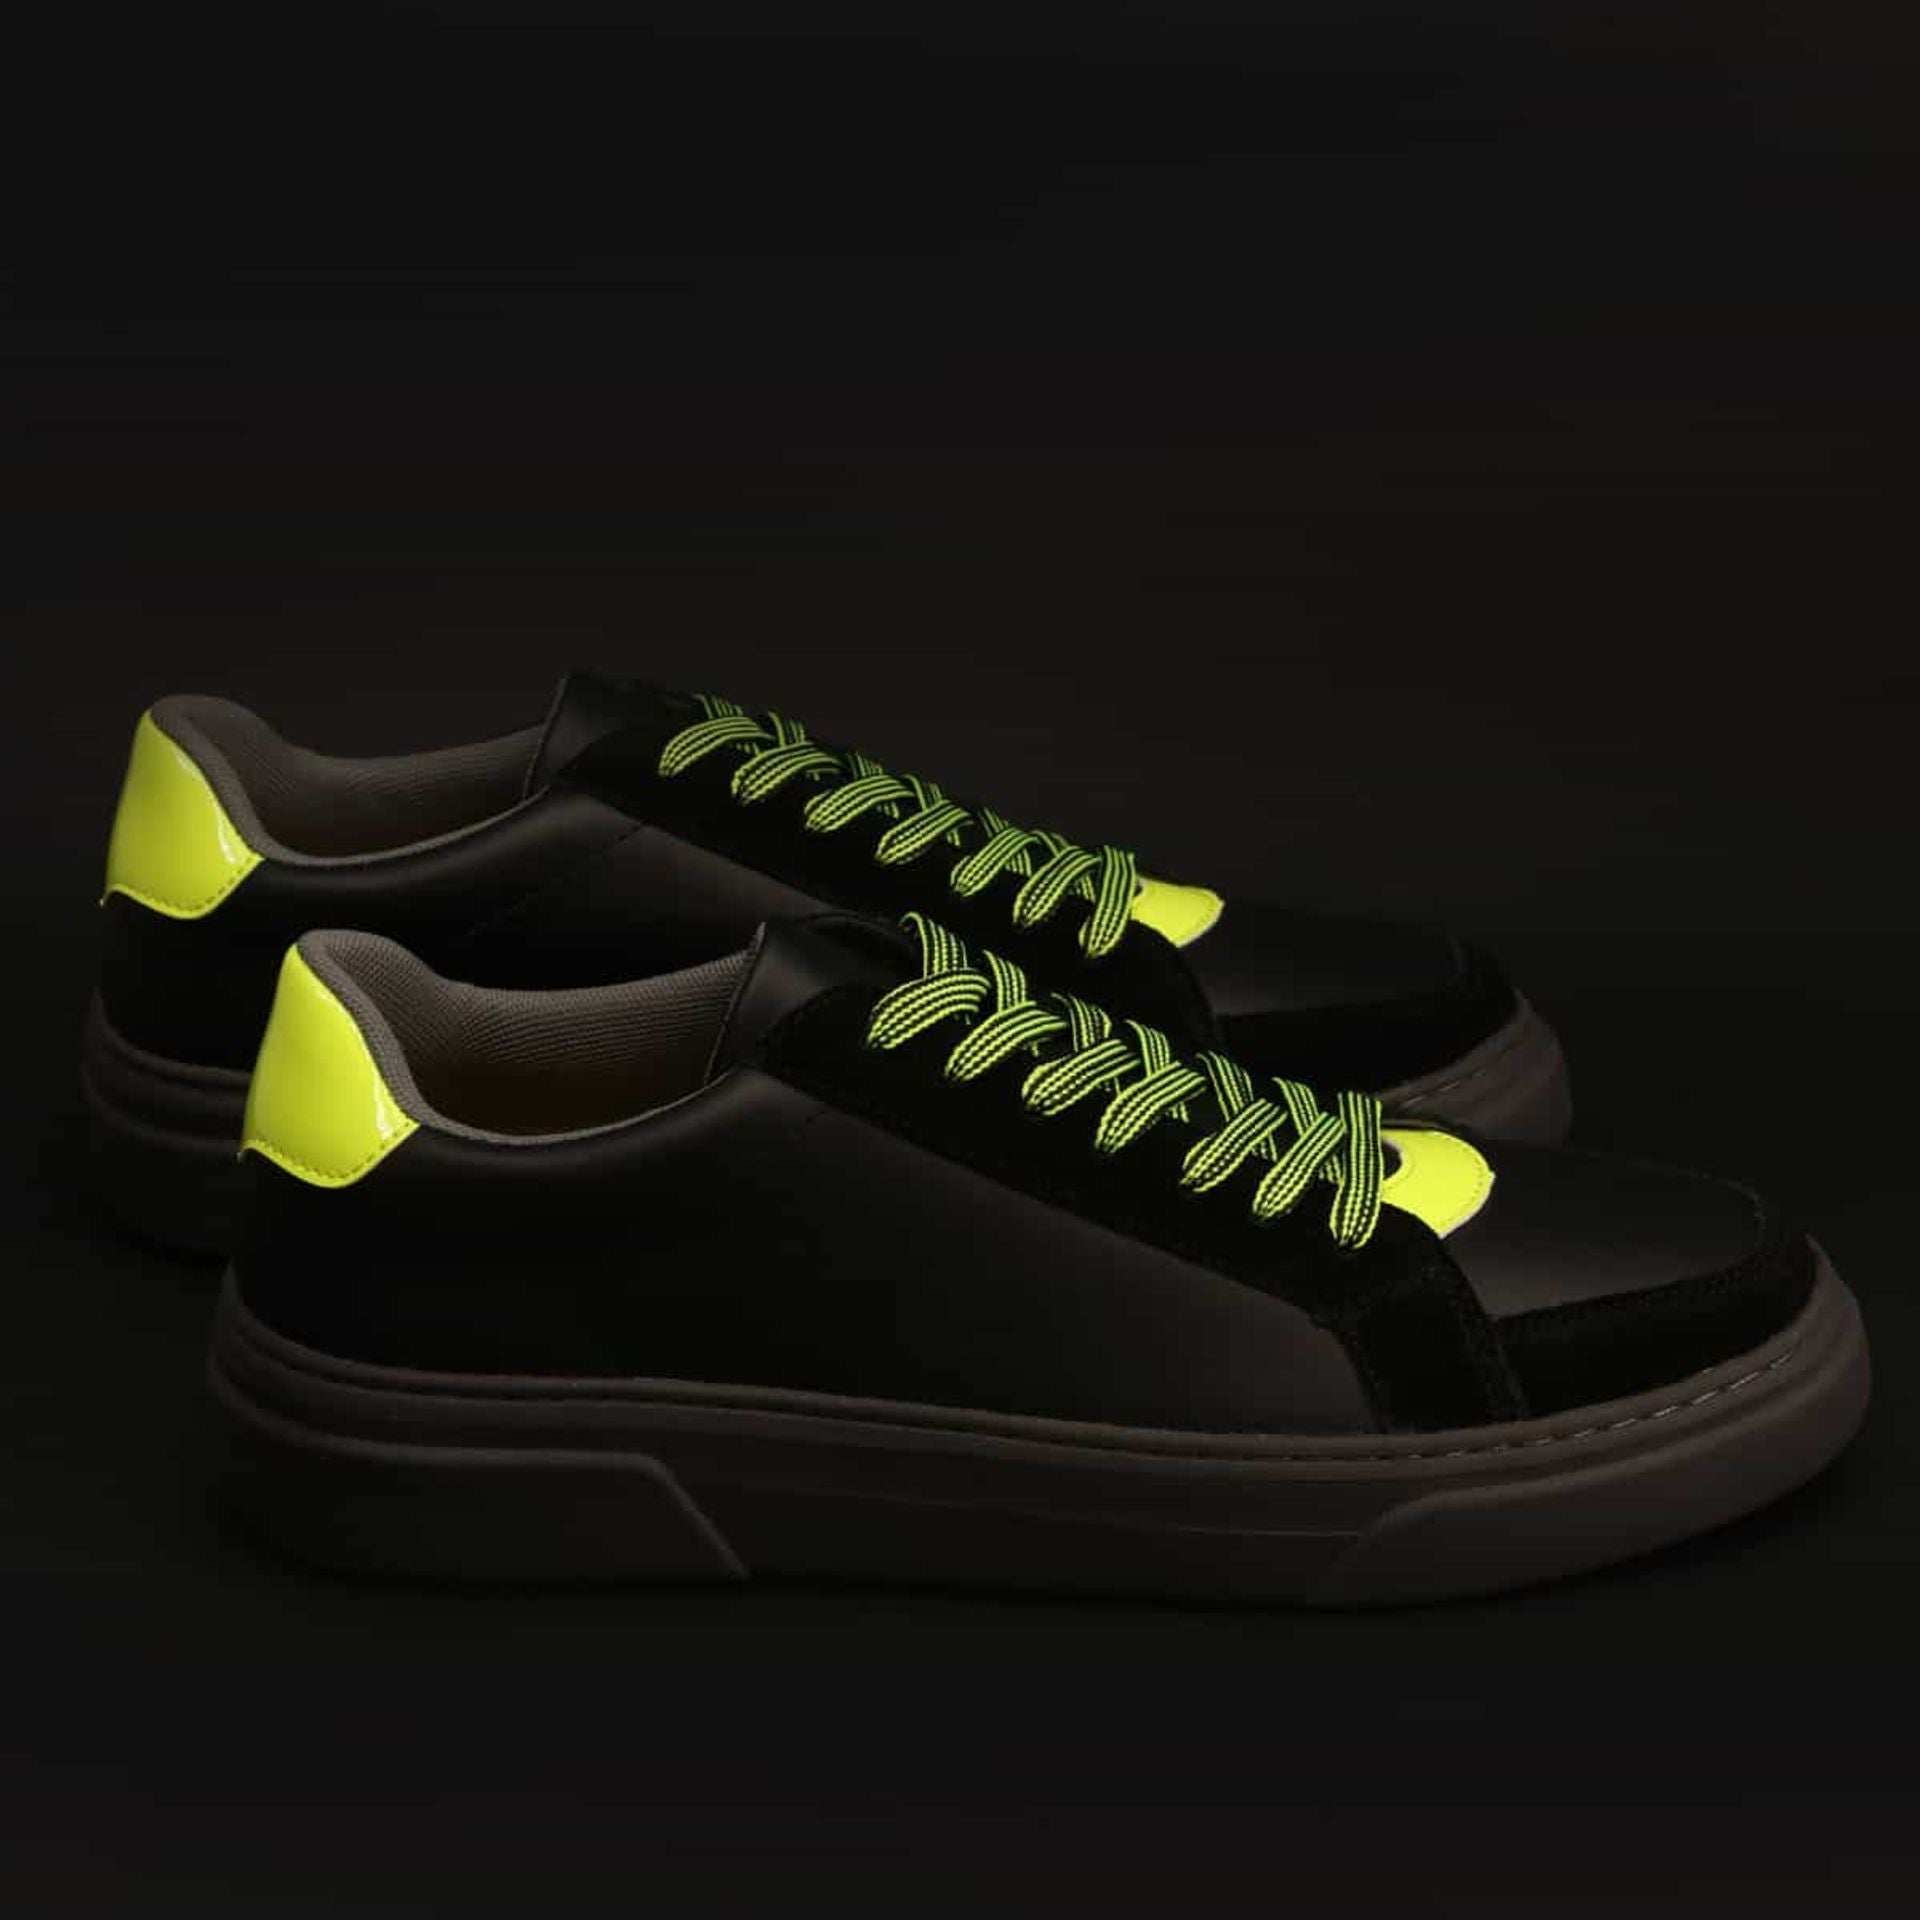 Duca Sneakers